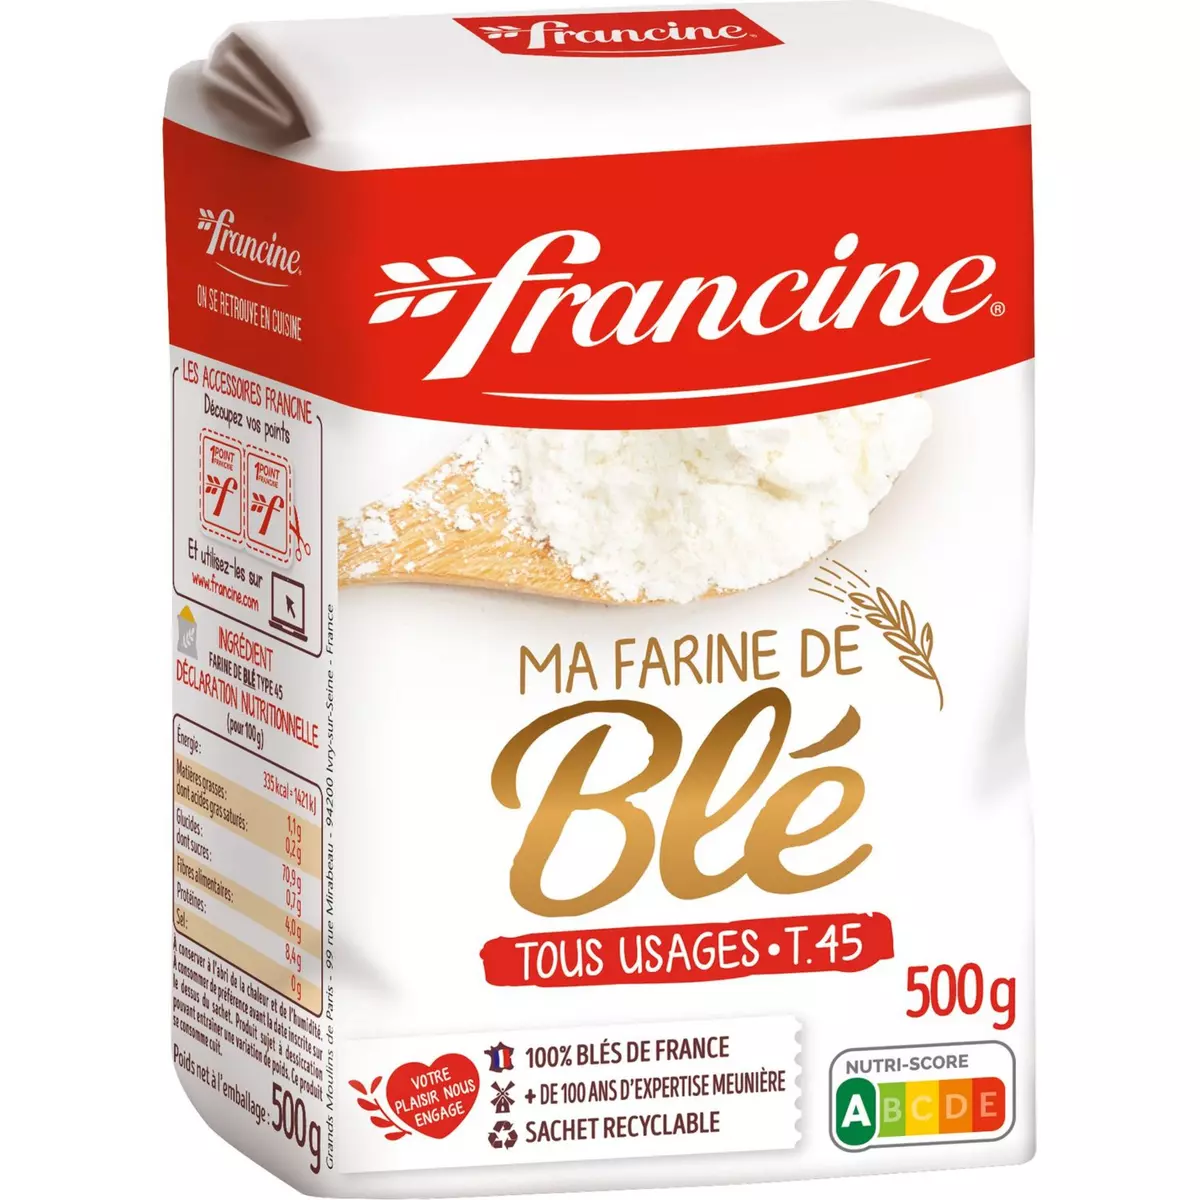 FRANCINE Farine de blé tous usages 500g